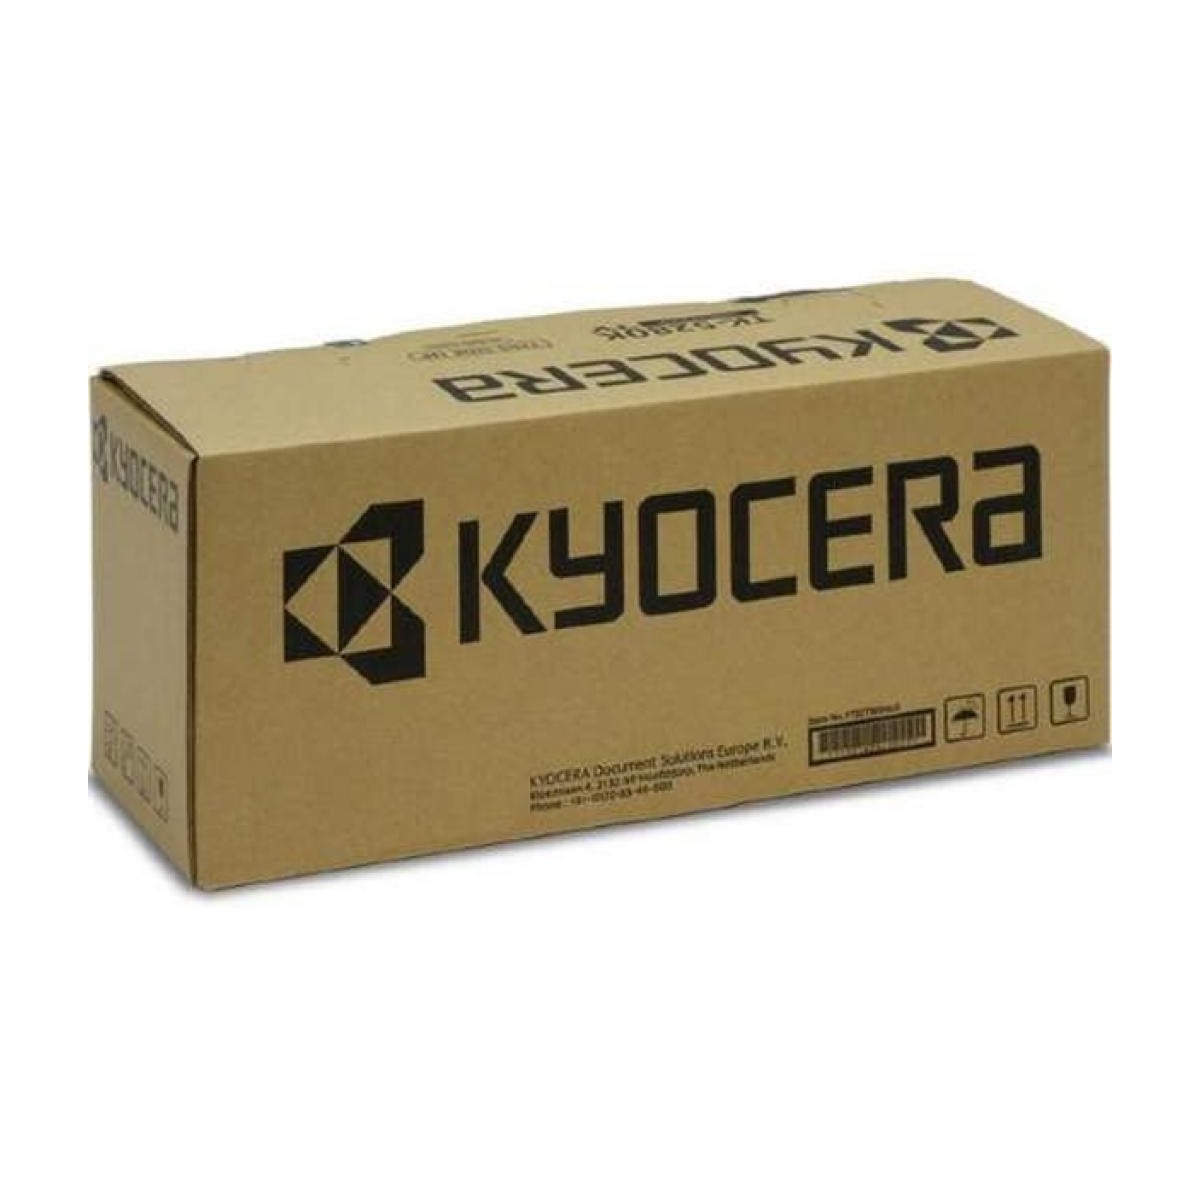 Kyocera FK-475 E fuser 300000 pages